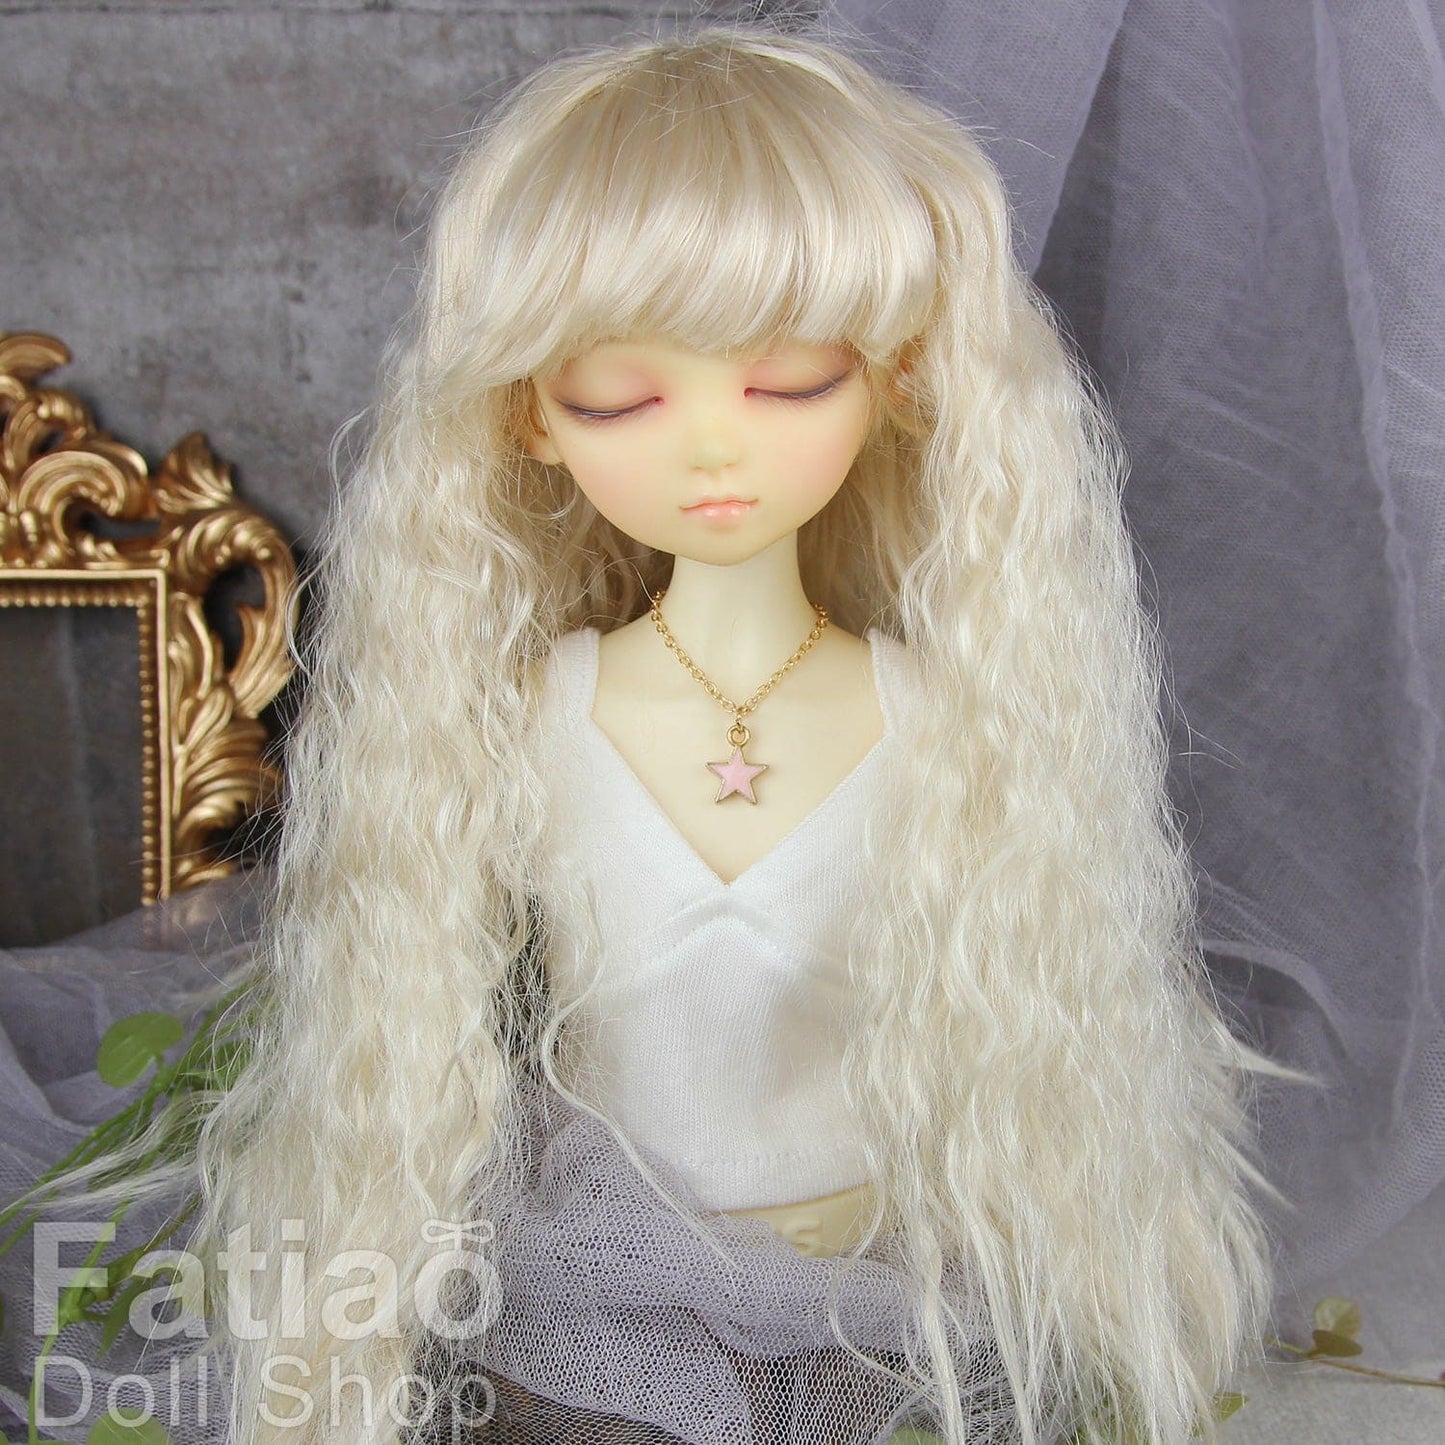 【Fatiao Doll Shop】FWF-402 娃用假髮 多色 / 7-8吋 BJD 4分 iMda3.0